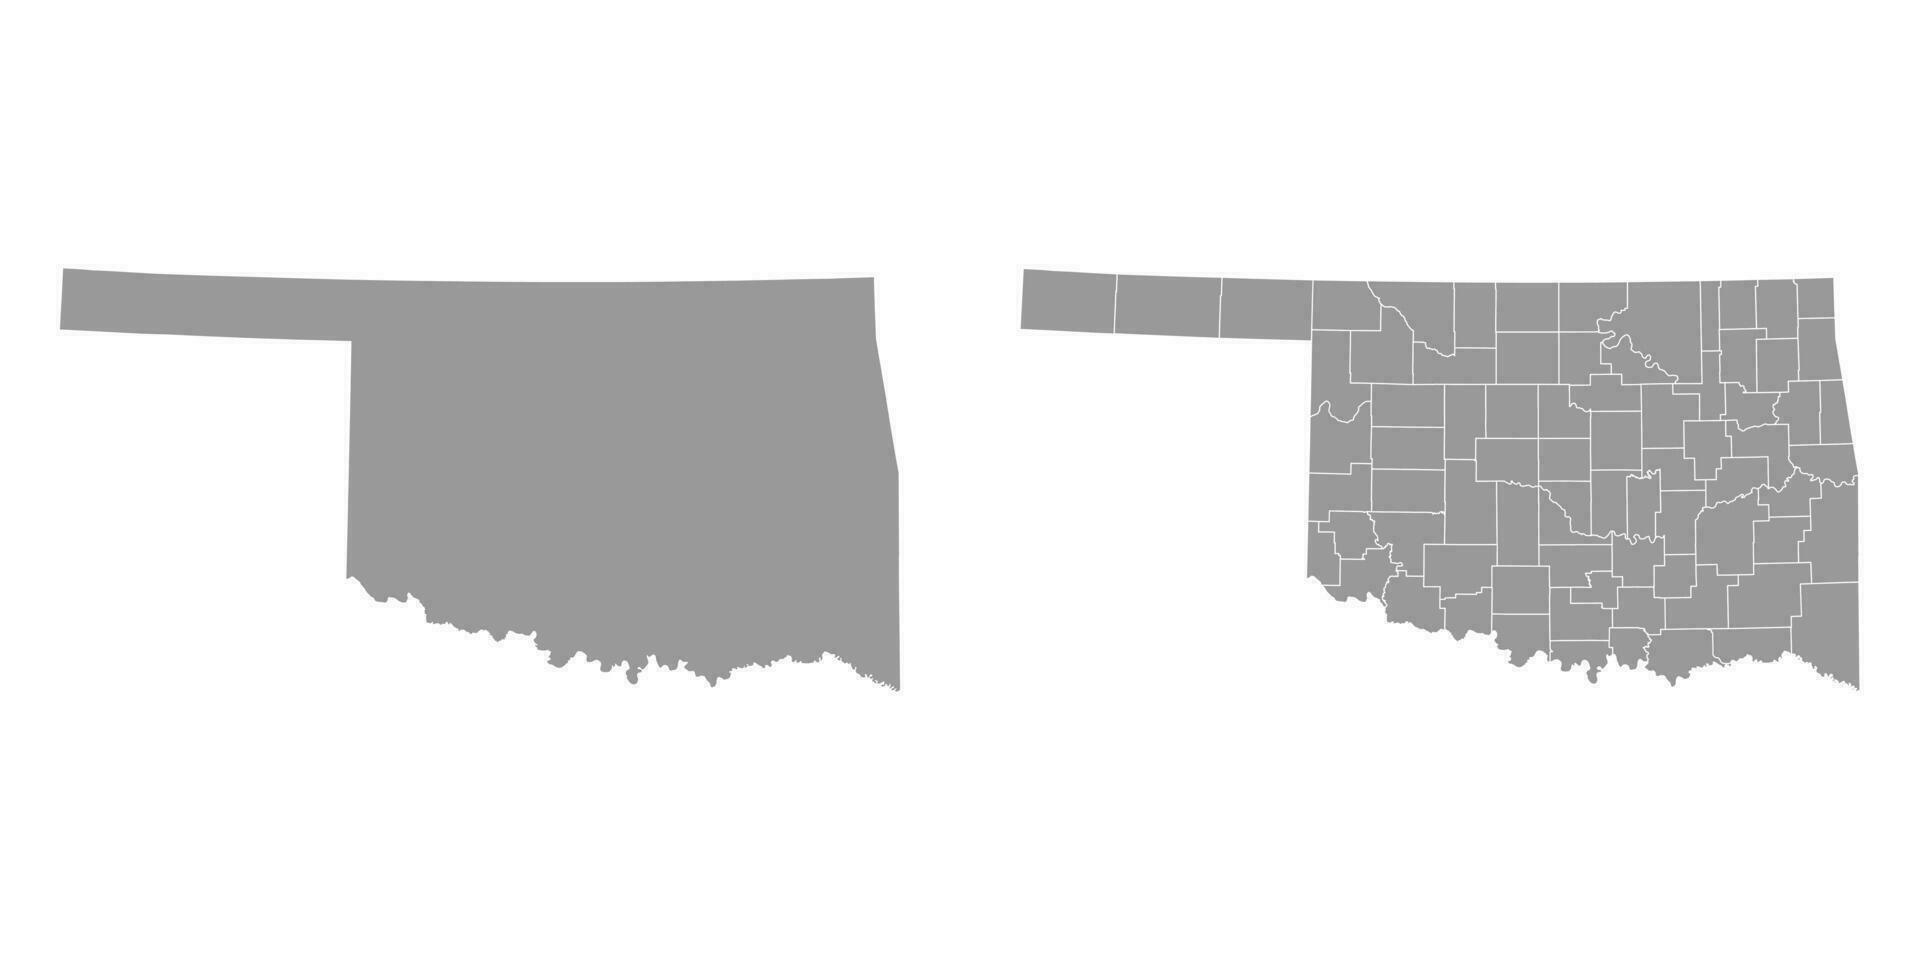 Oklahoma Estado cinzento mapas. vetor ilustração.